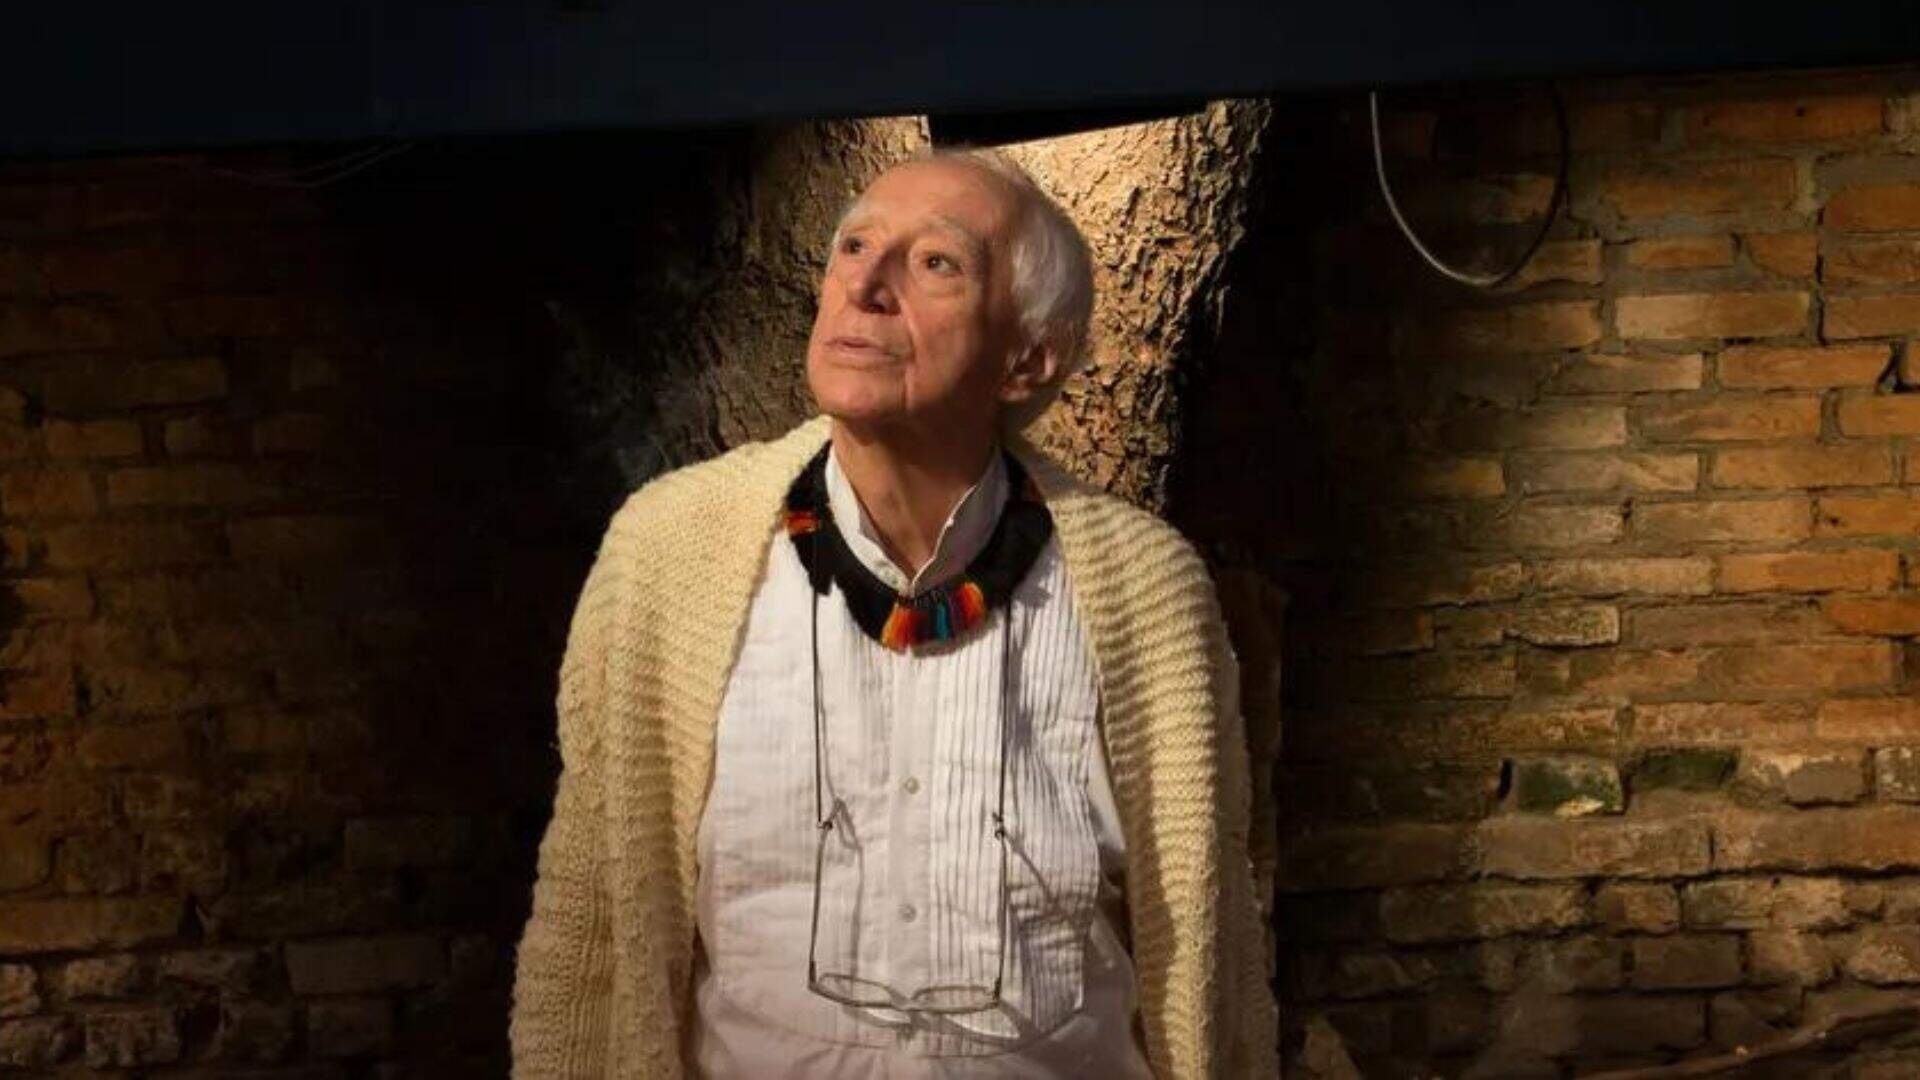 Diretor de teatro, Zé Celso, morre aos 86 anos após ser atingido por incêndio em casa - Metropolitana FM